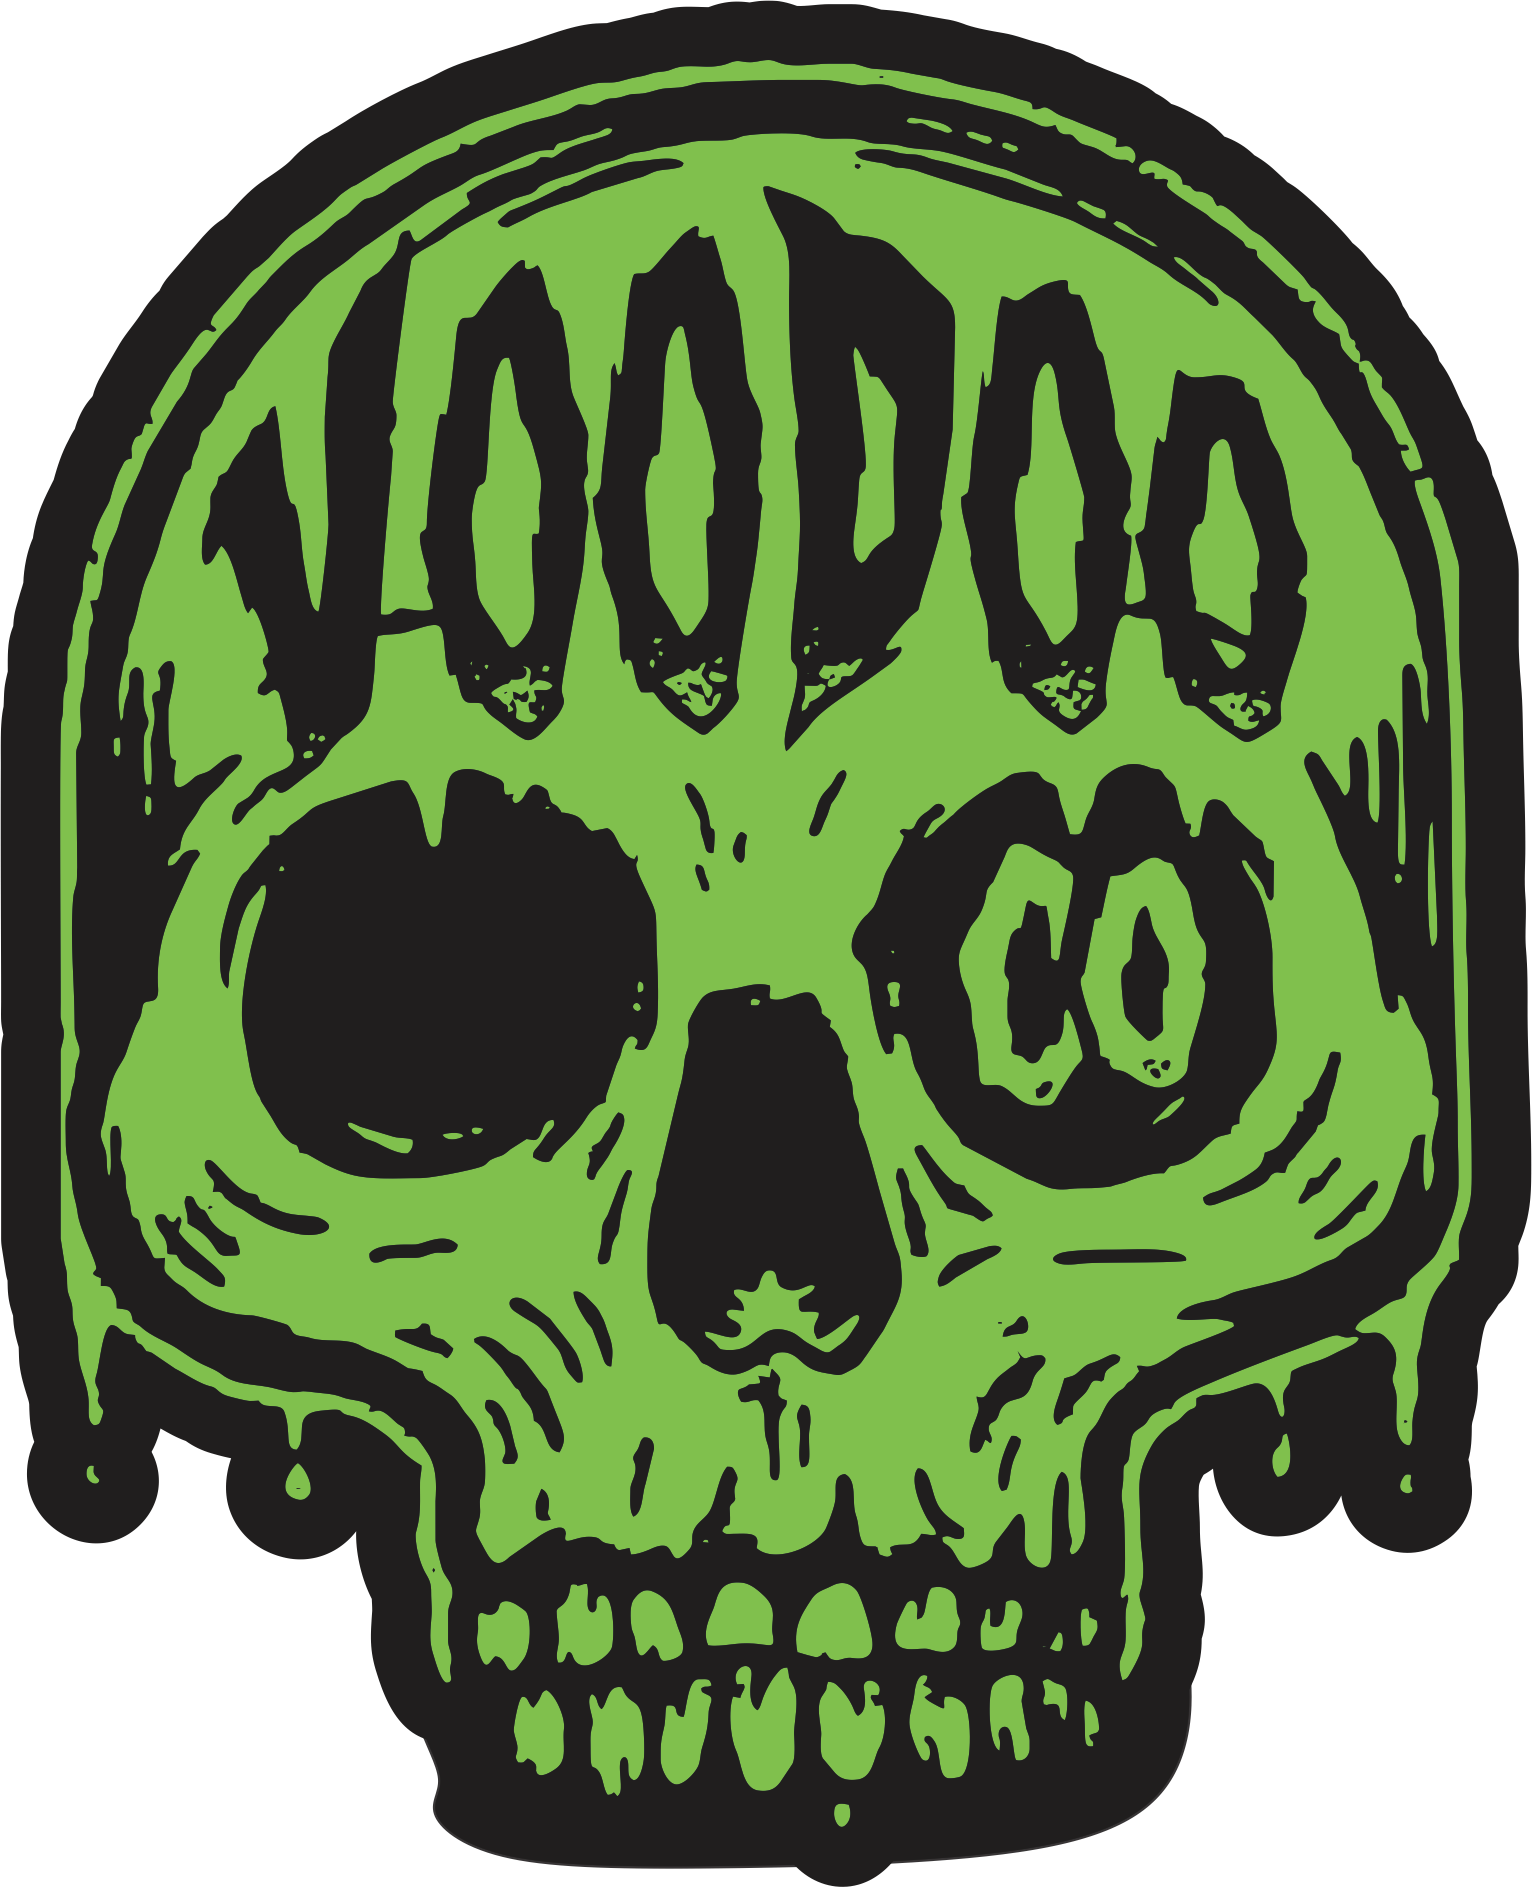 Voodoo Co.